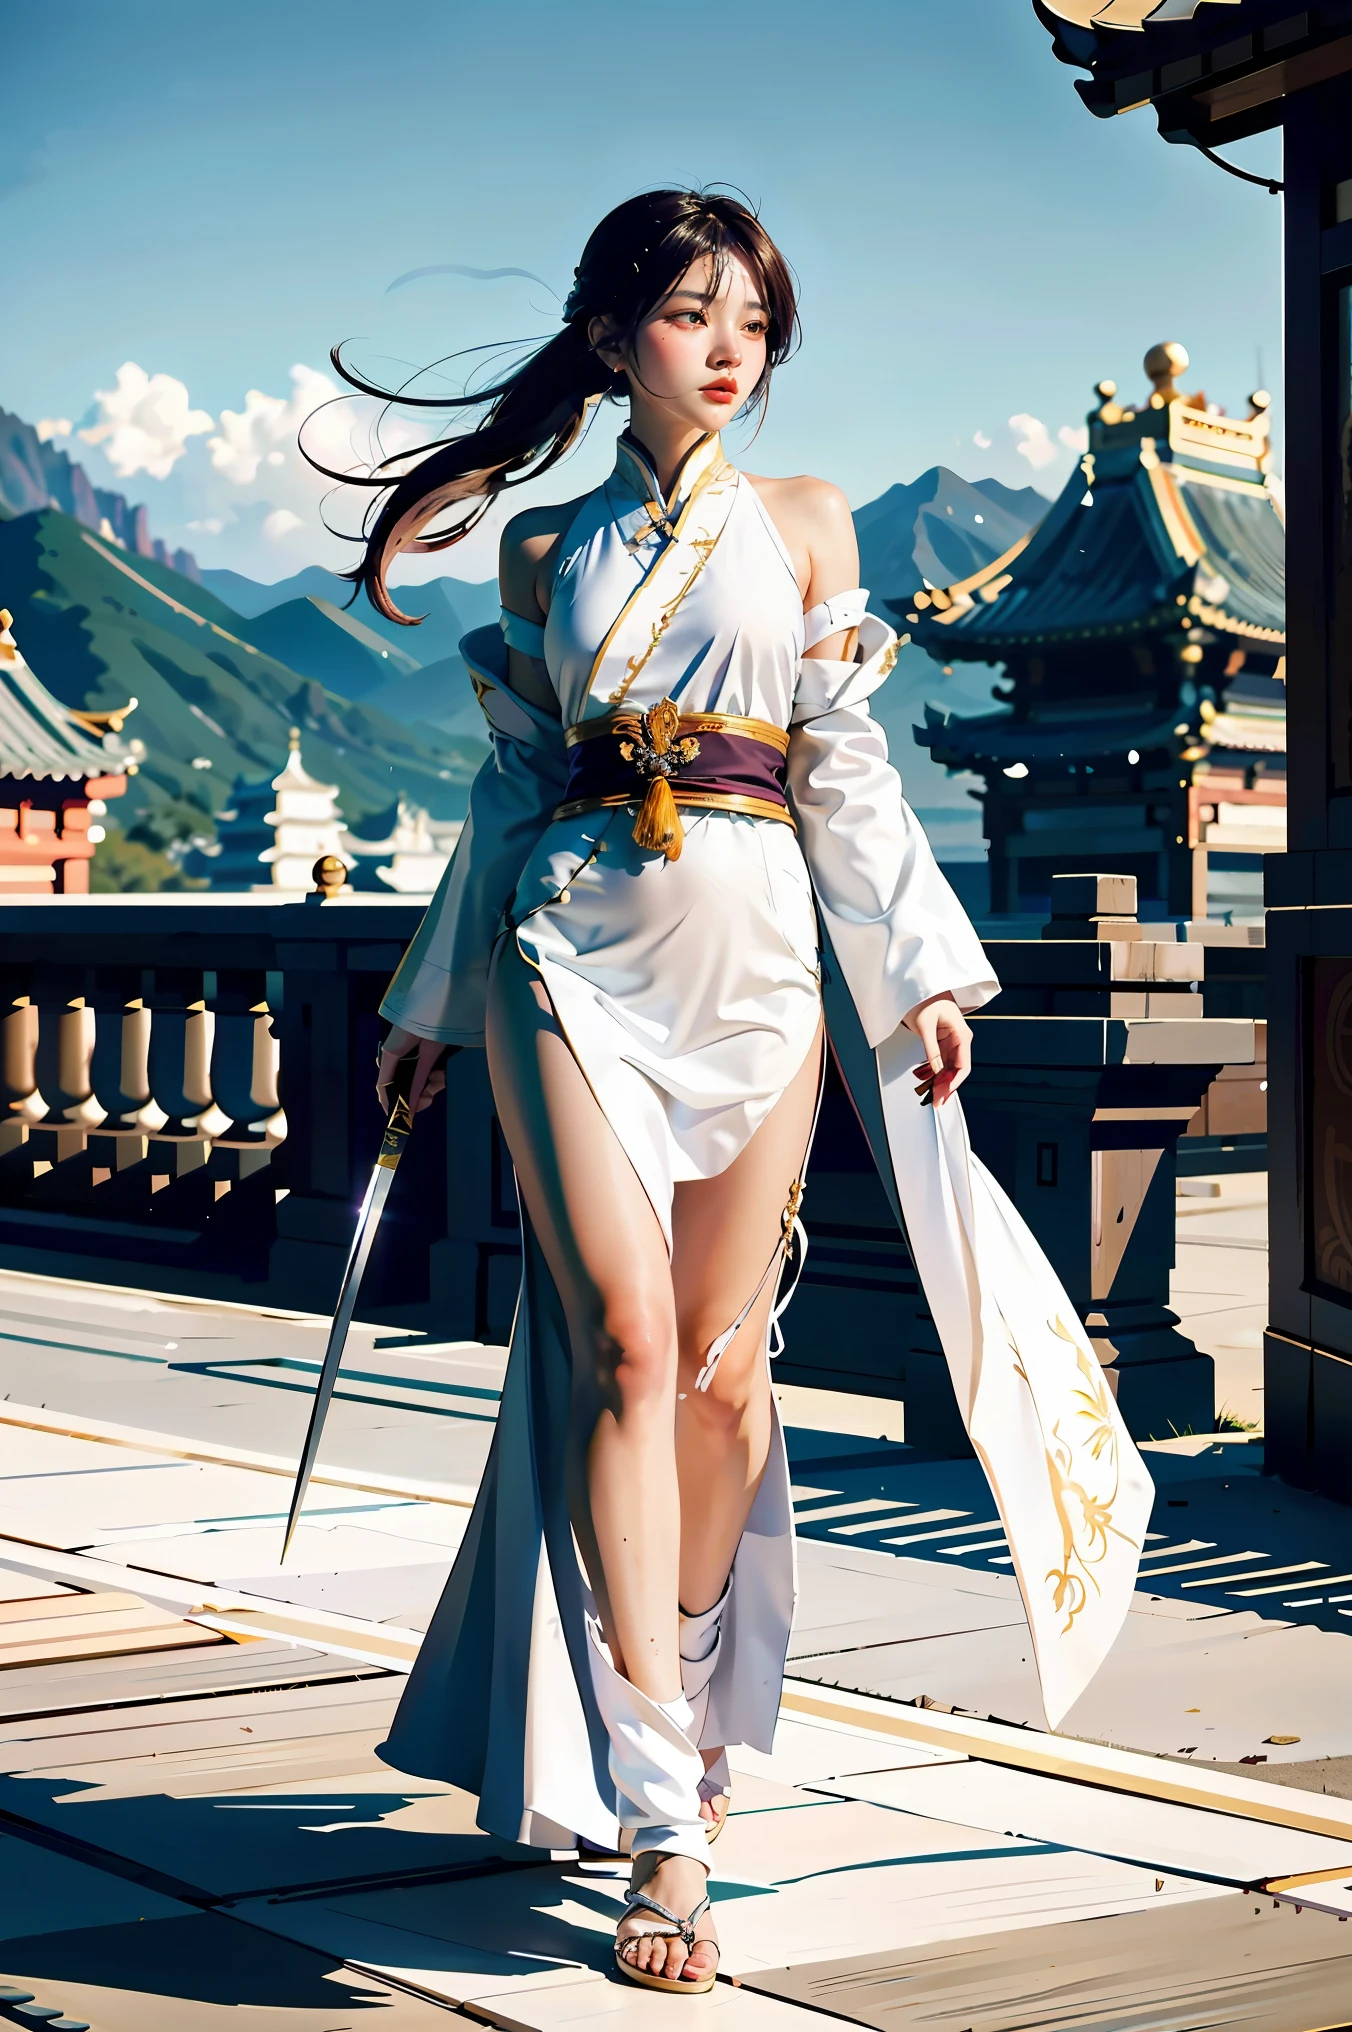 ภาพระยะใกล้ของผู้หญิงถือดาบในชุดสีขาว, ภาพตัวละครโดย Yang J, กำลังมาแรงใน CGSociety, ศิลปะแฟนตาซี, ภาพวาดตัวละครที่สวยงาม, artwork in the style of กูไวซ์, กูไวซ์, ฮานฟู่สีขาว, เสื้อคลุมสีขาวไหล, อู๋เซี่ยทั้งตัว, ศิลปะตัวละครที่ยอดเยี่ยมและประณีต, ศิลปะตัวละครที่น่าทึ่ง, นักฆ่าสาวสวย